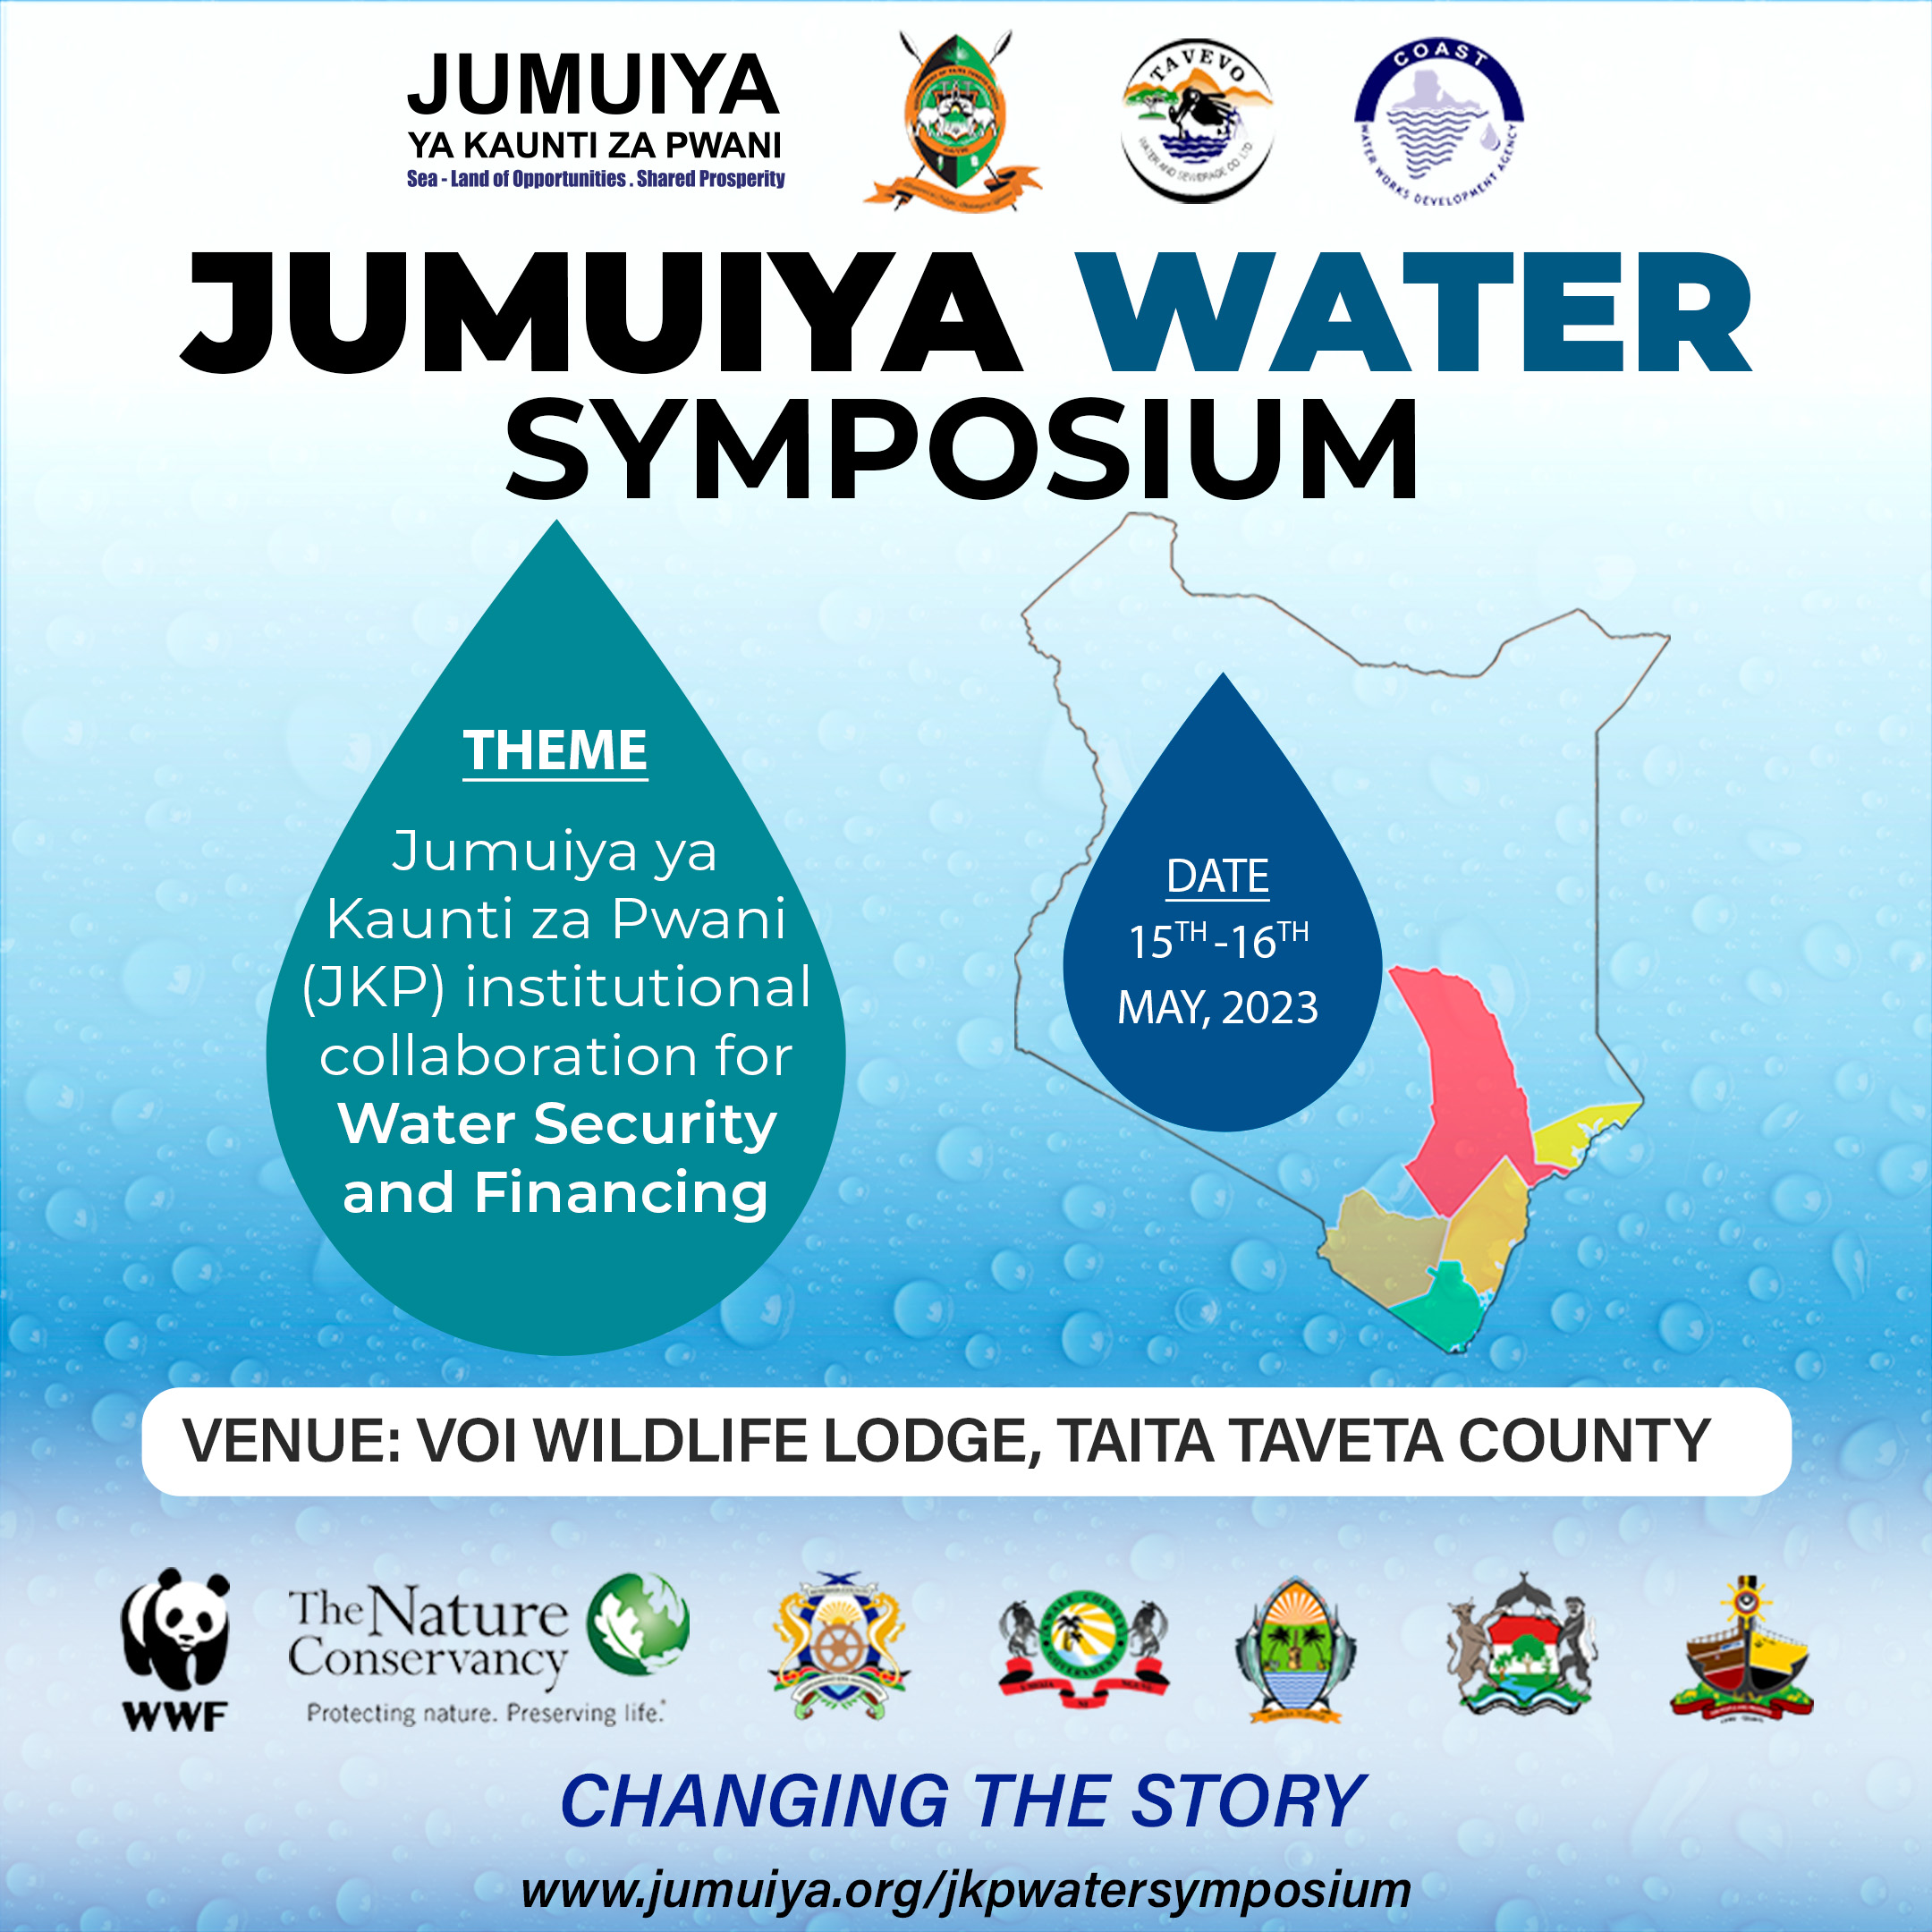 Jumuiya Water Symposium